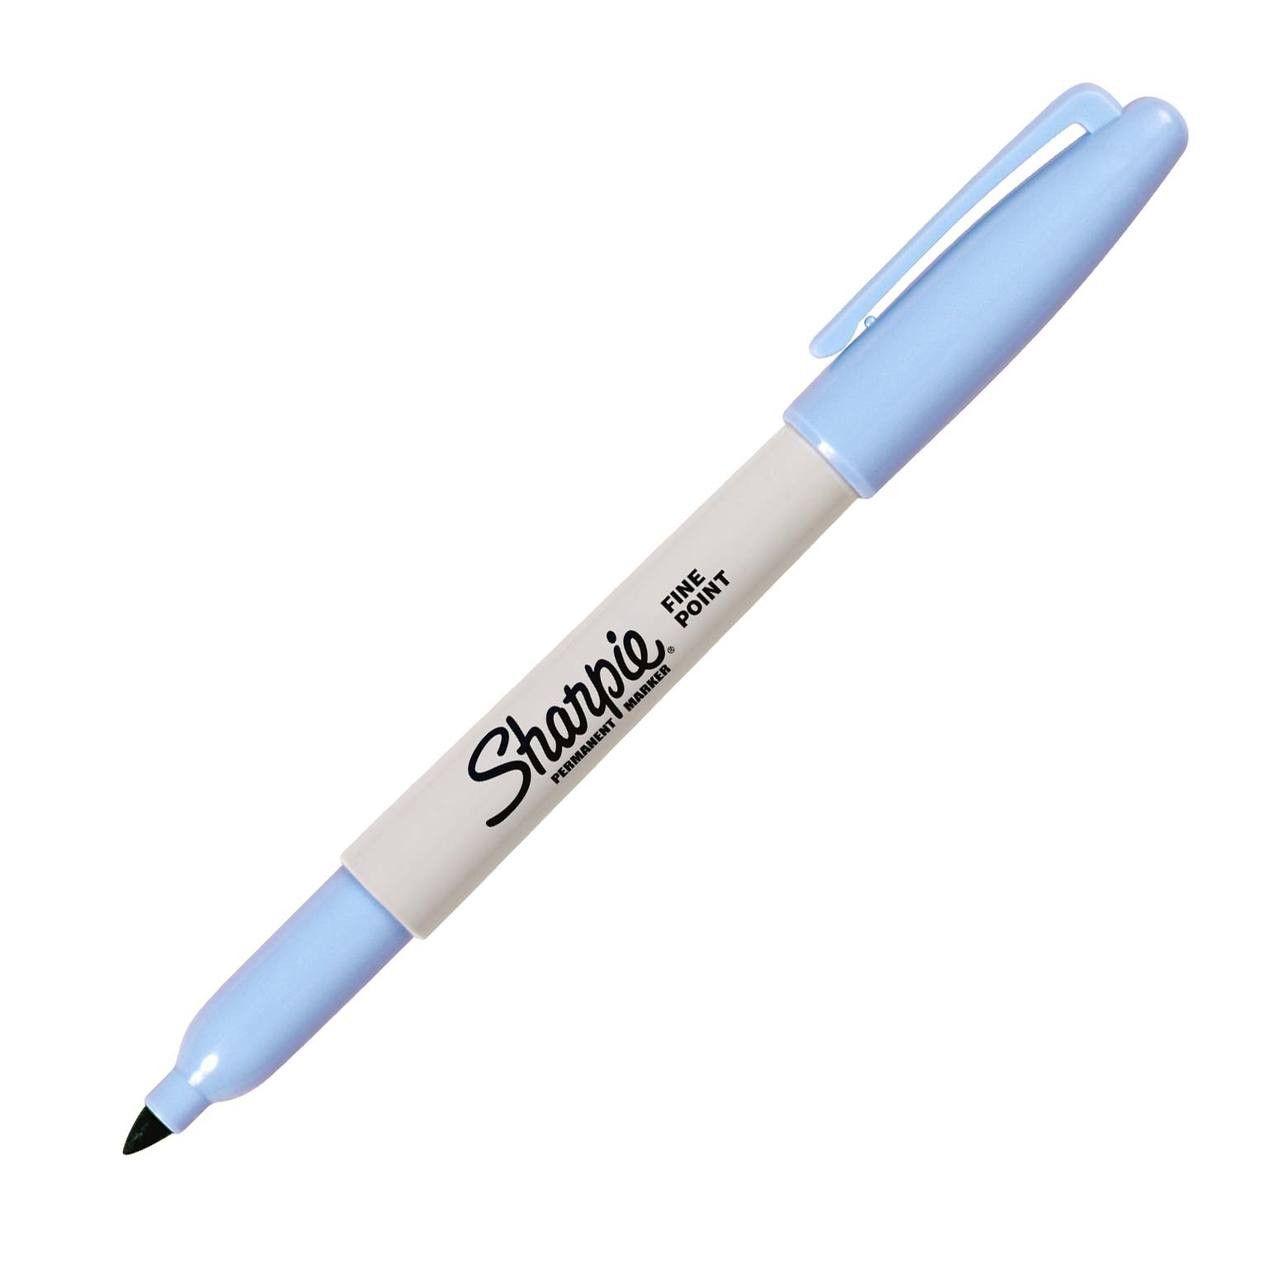 Sharpie Pen - Fine Point - Fine Pen Point - Black, Blue, Turquoise